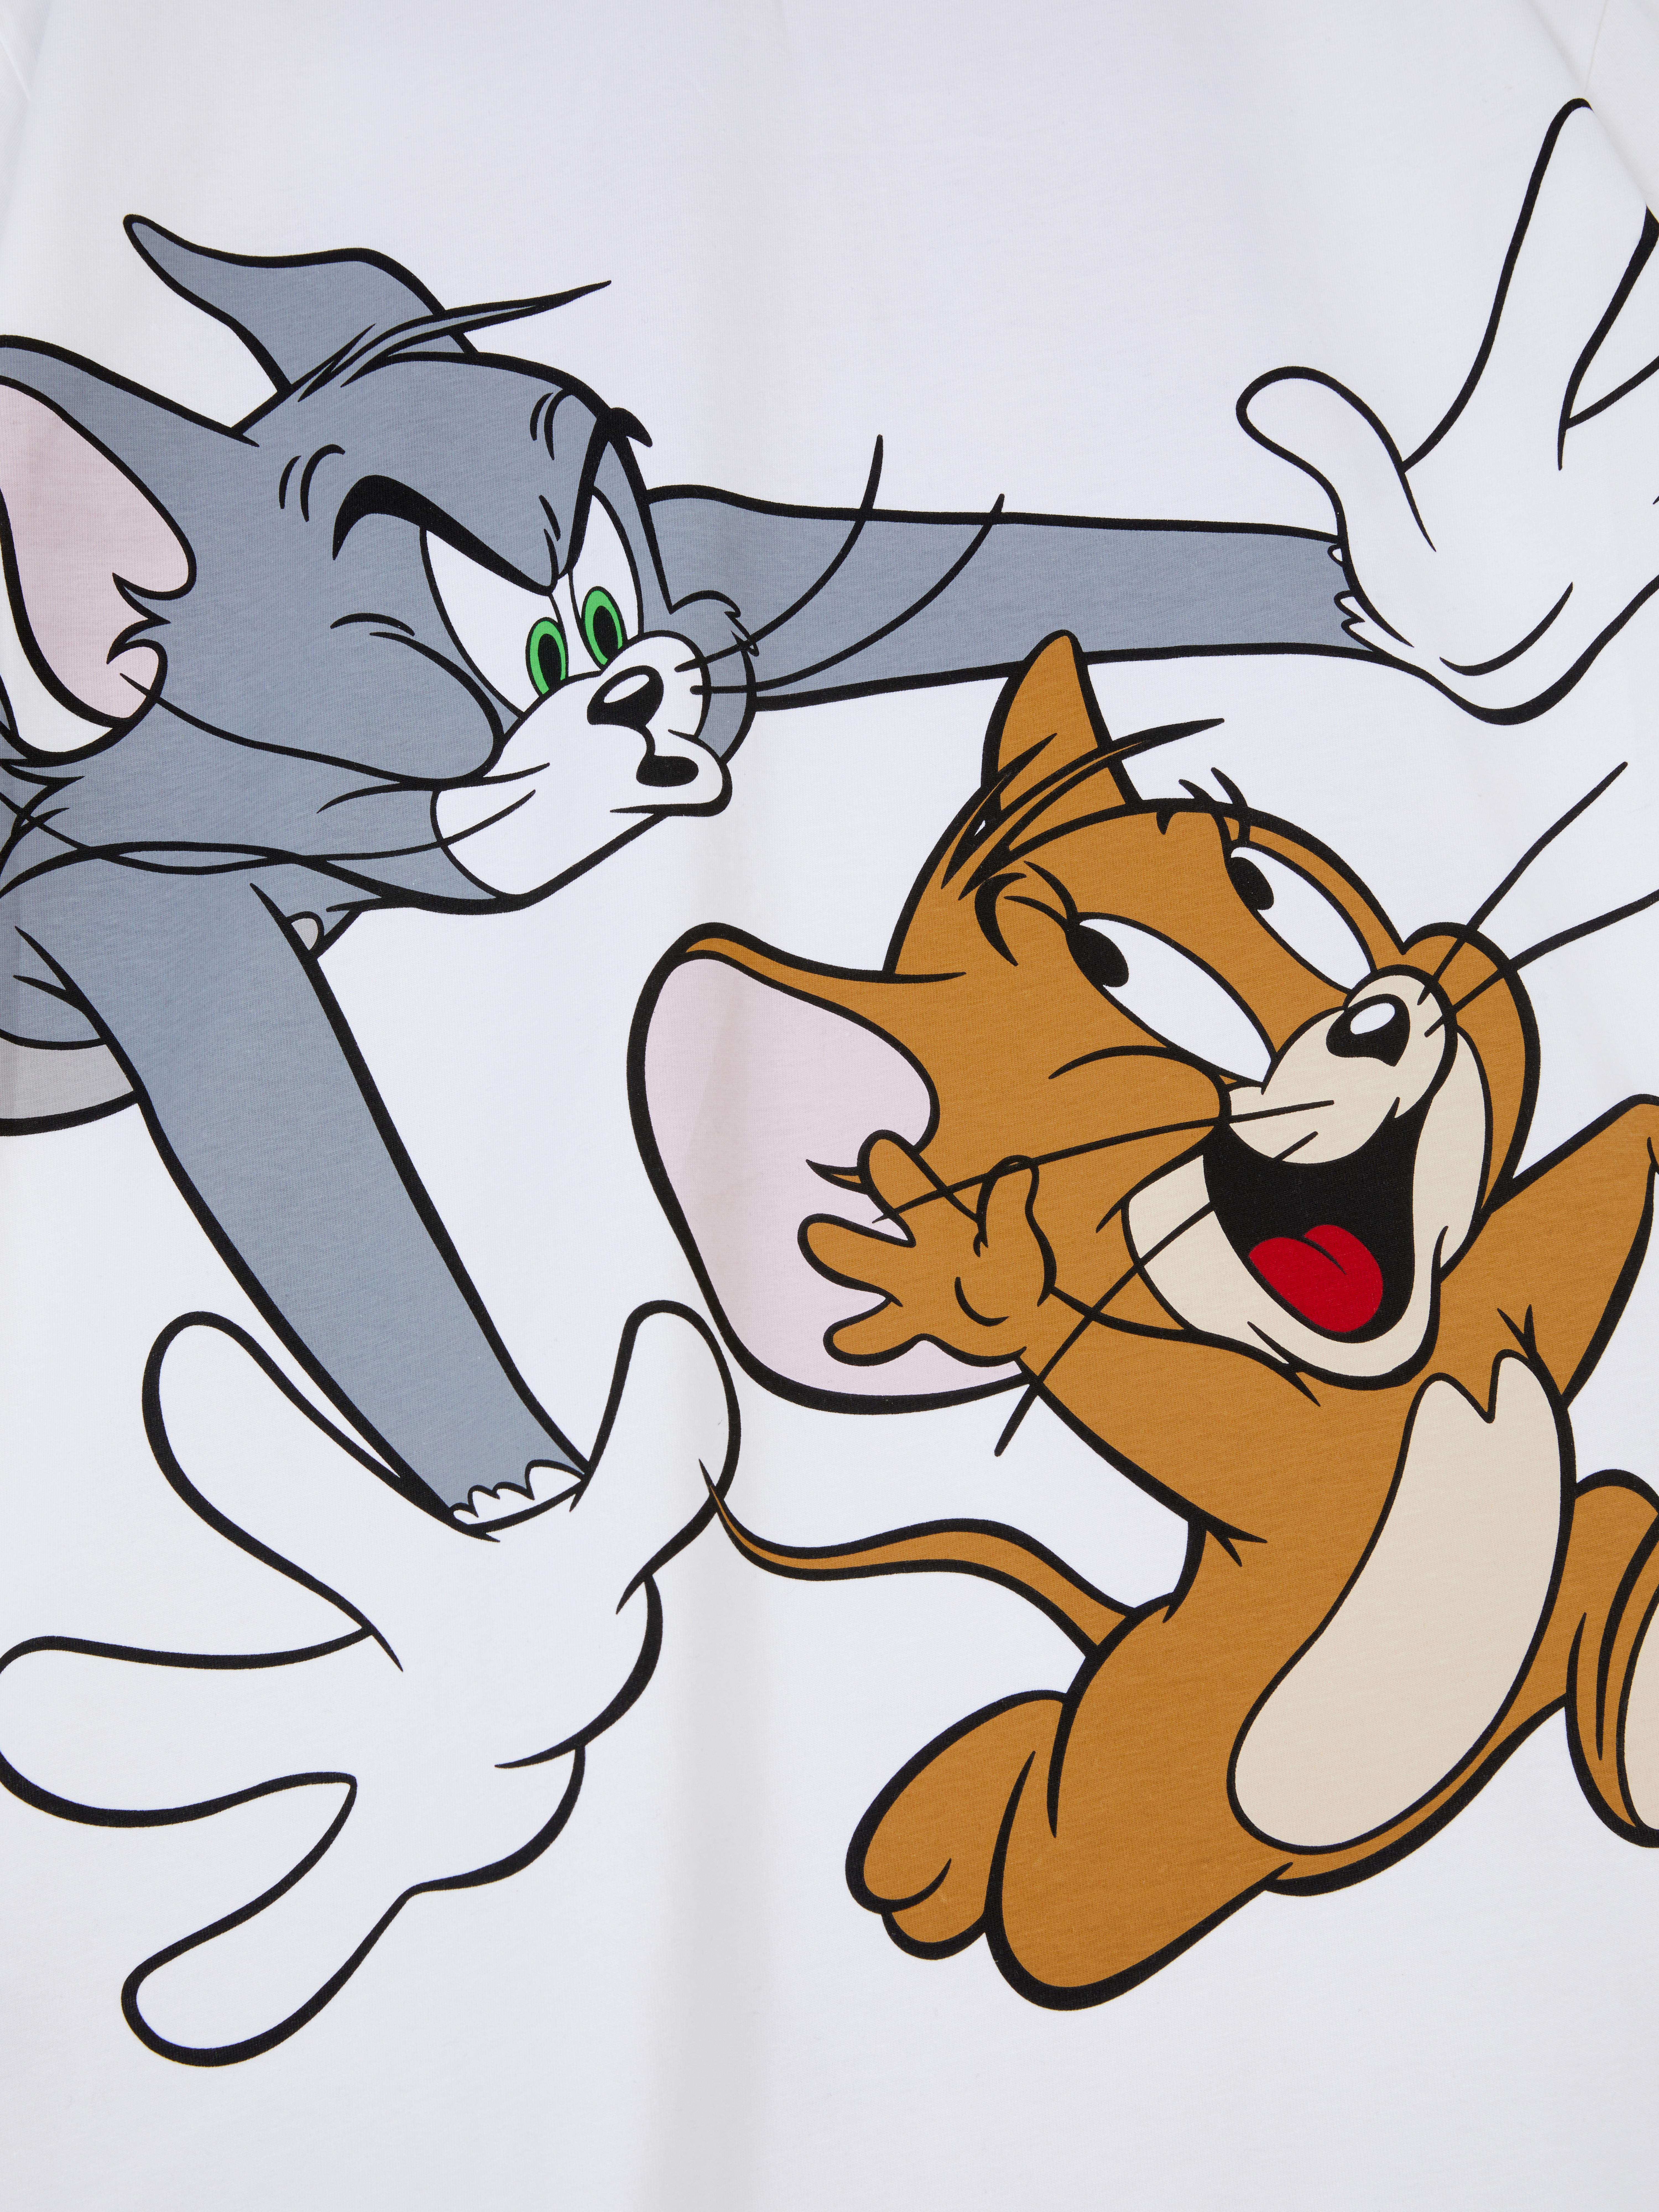 Tom and Jerry Pyjama Top